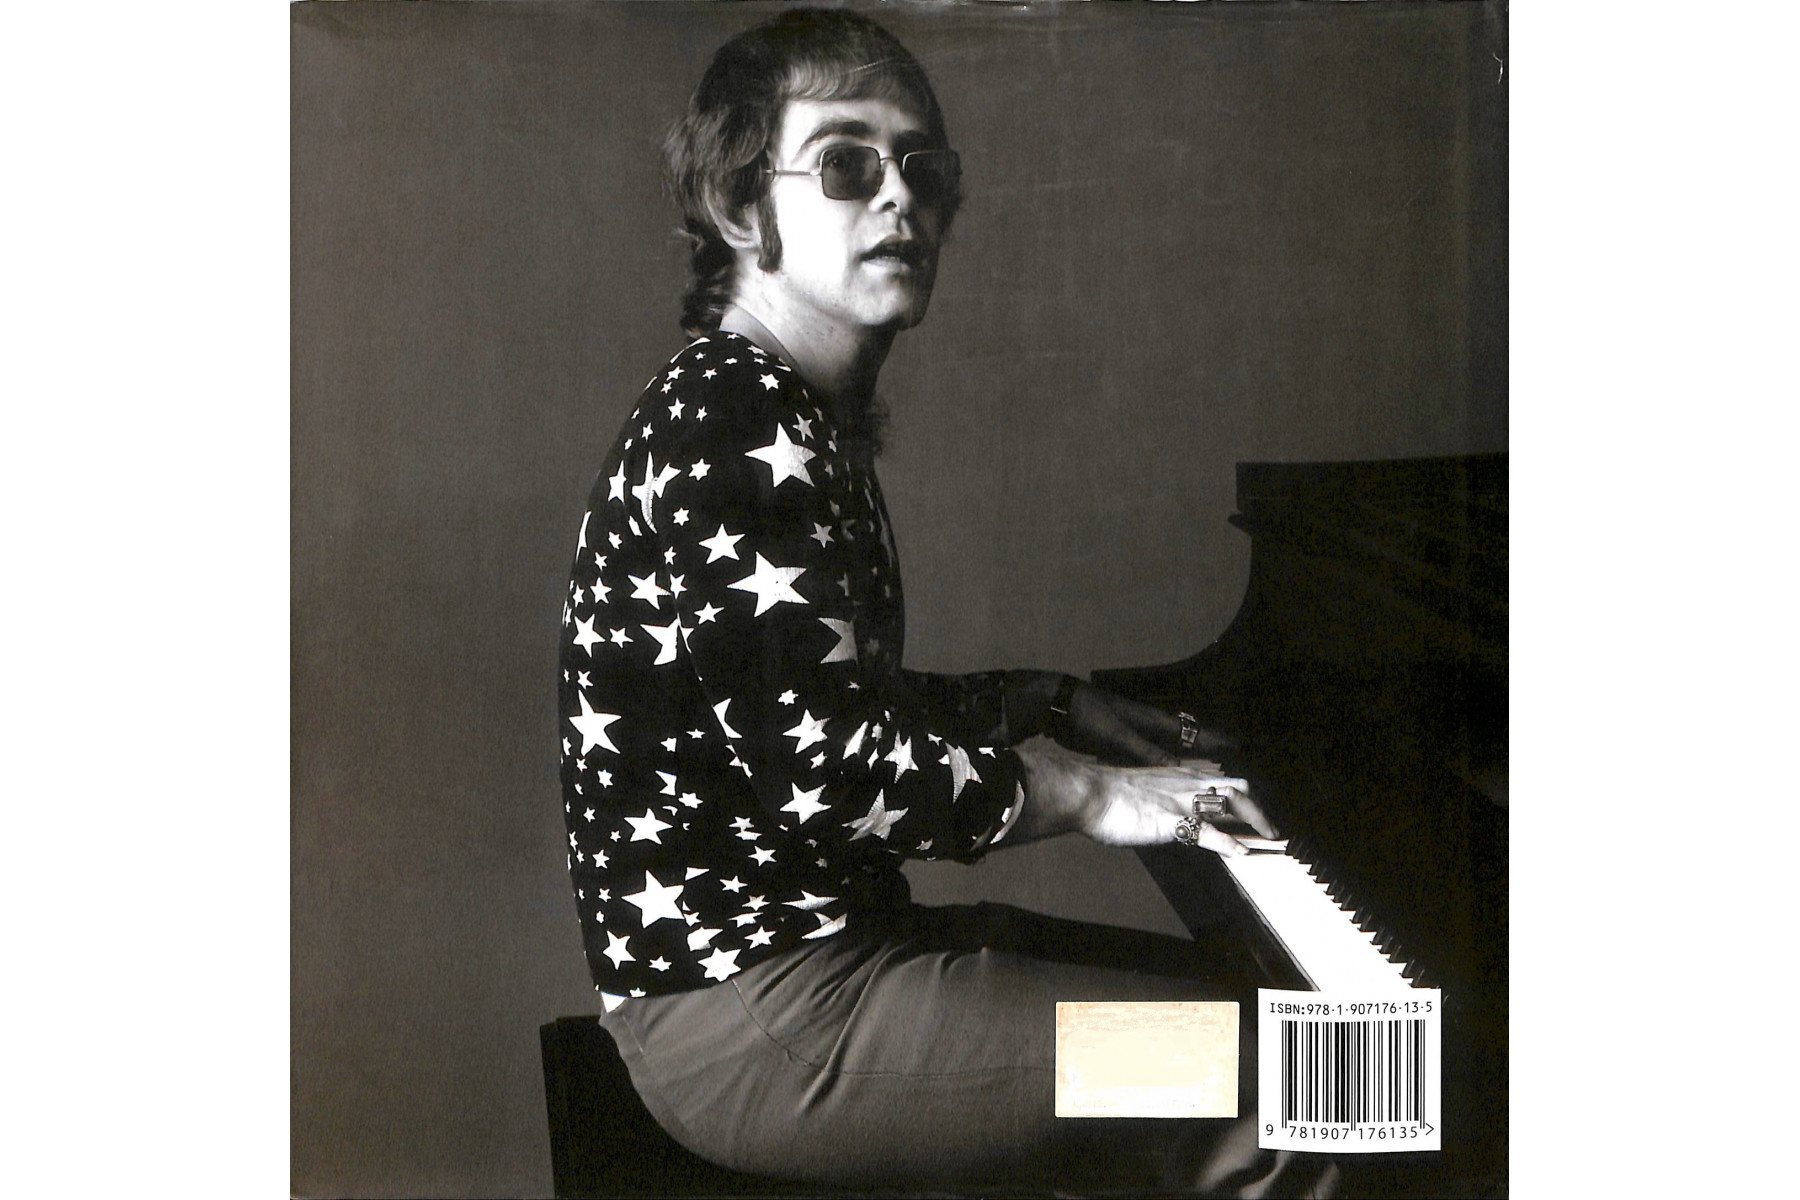 Elton John: Collector`s Biography